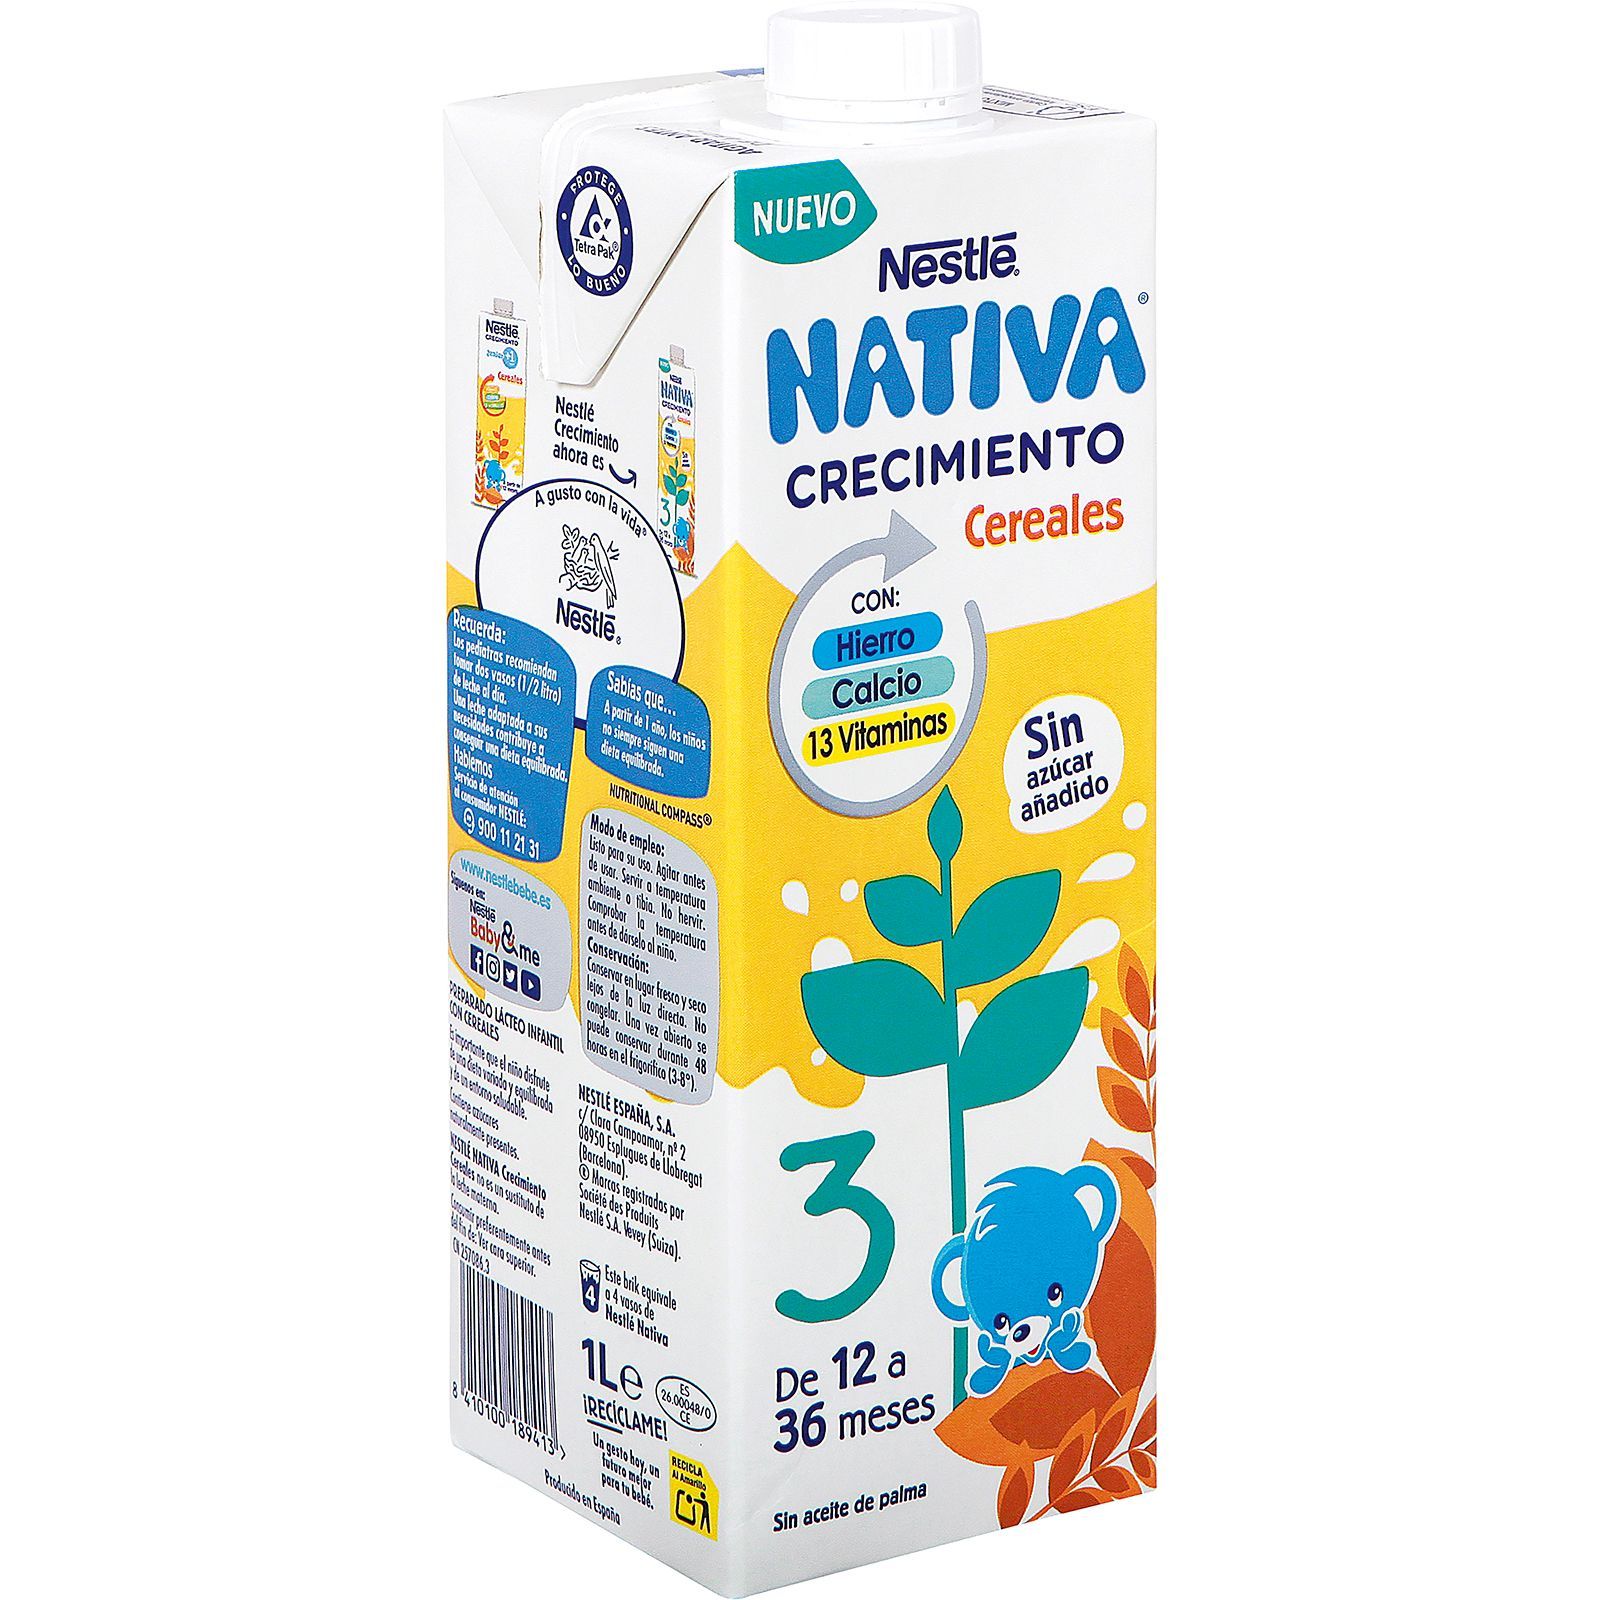 Nativa Nestlé Preparado lácteo infantil de crecimiento desde 1 año